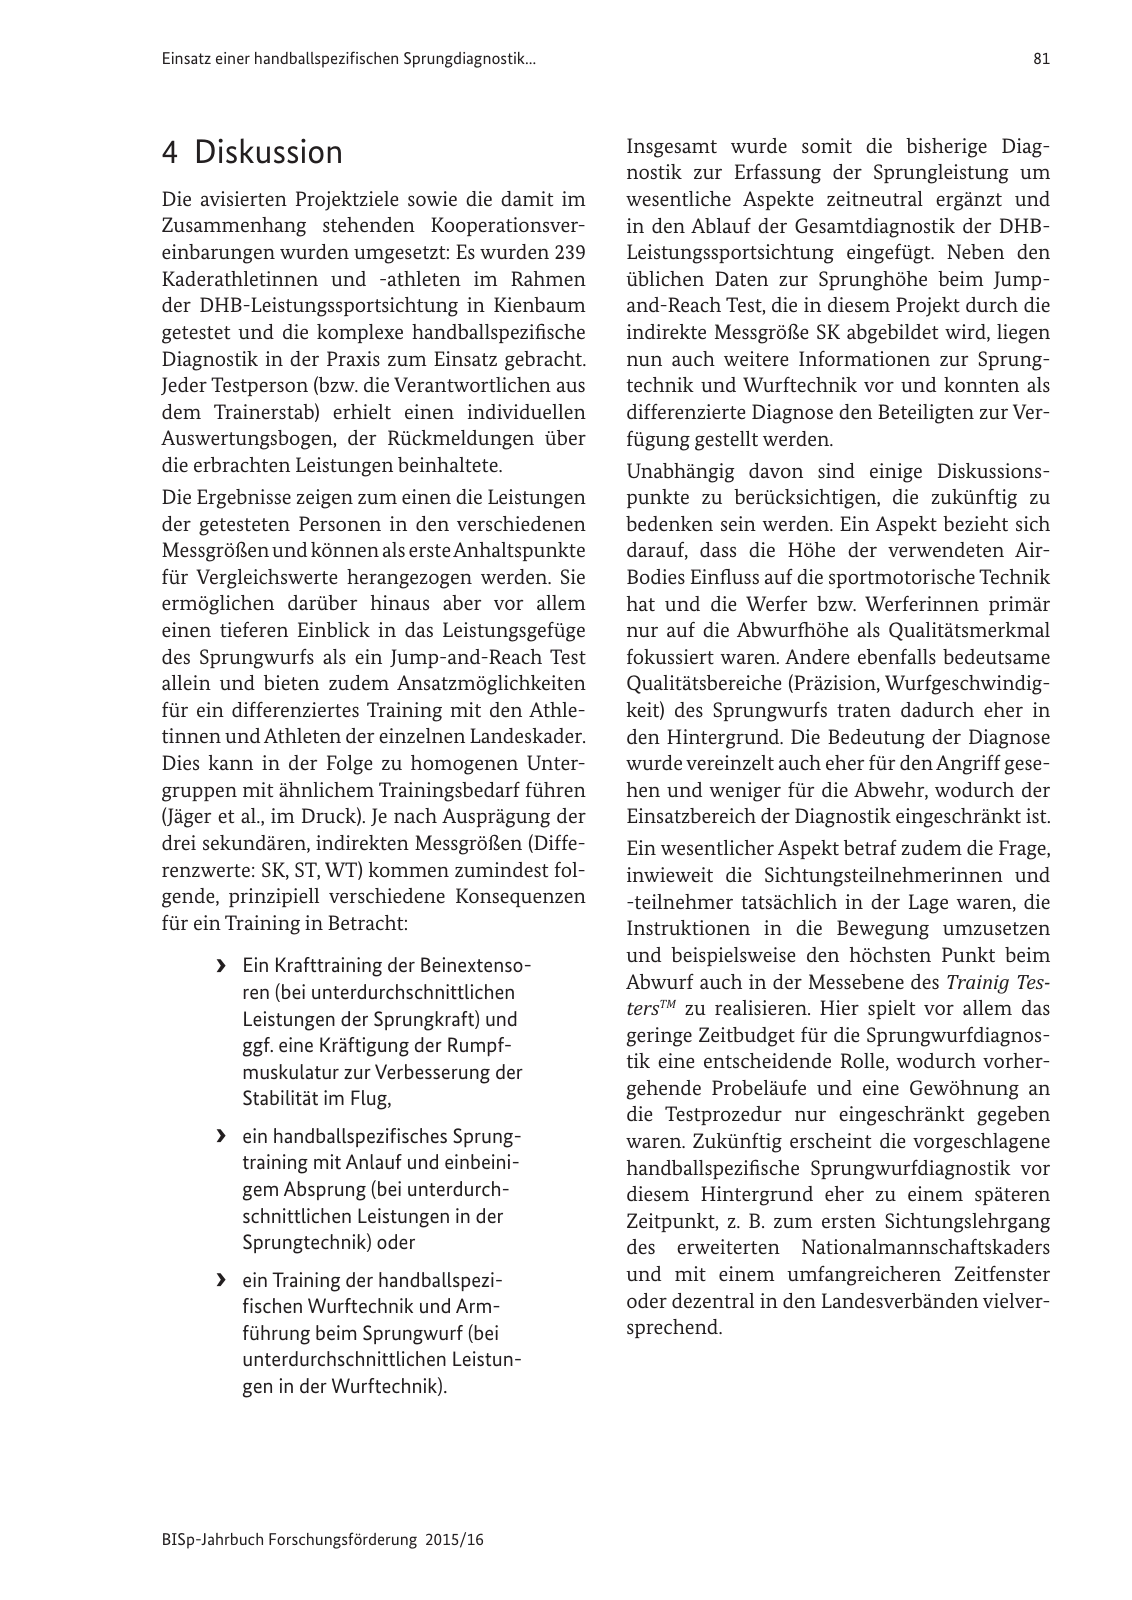 Vorschau BISp-Jahrbuch Forschungsförderung 2015/16 Seite 83